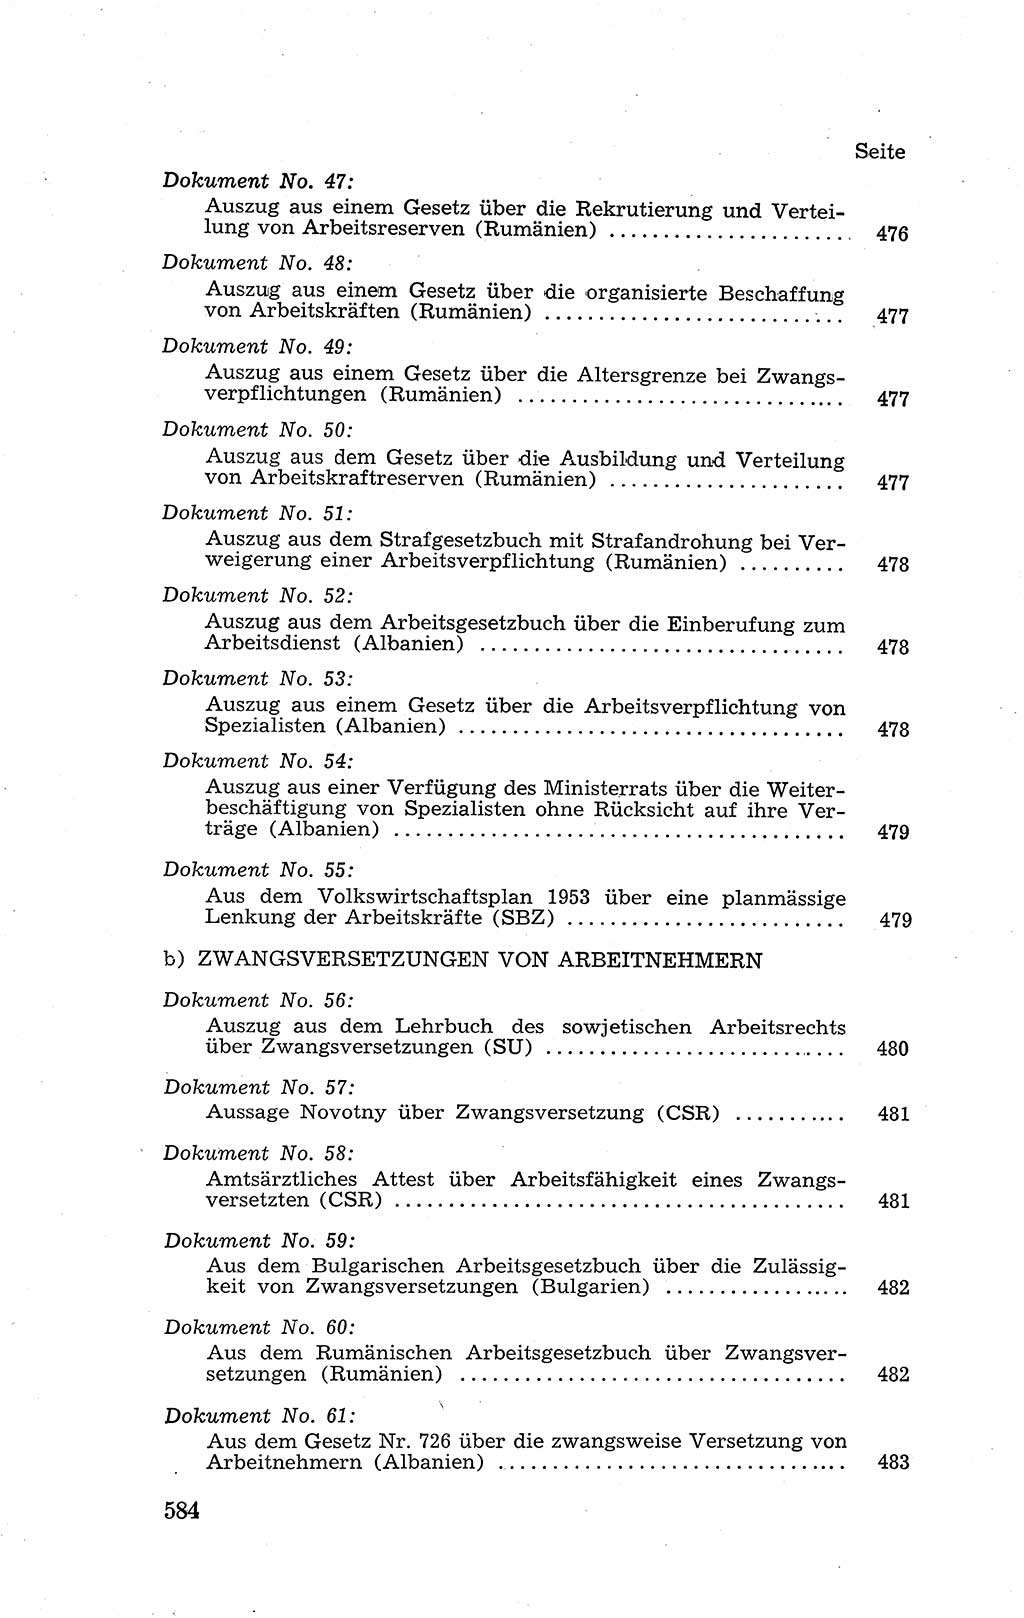 Recht in Fesseln, Dokumente, Internationale Juristen-Kommission [Bundesrepublik Deutschland (BRD)] 1955, Seite 584 (R. Dok. IJK BRD 1955, S. 584)